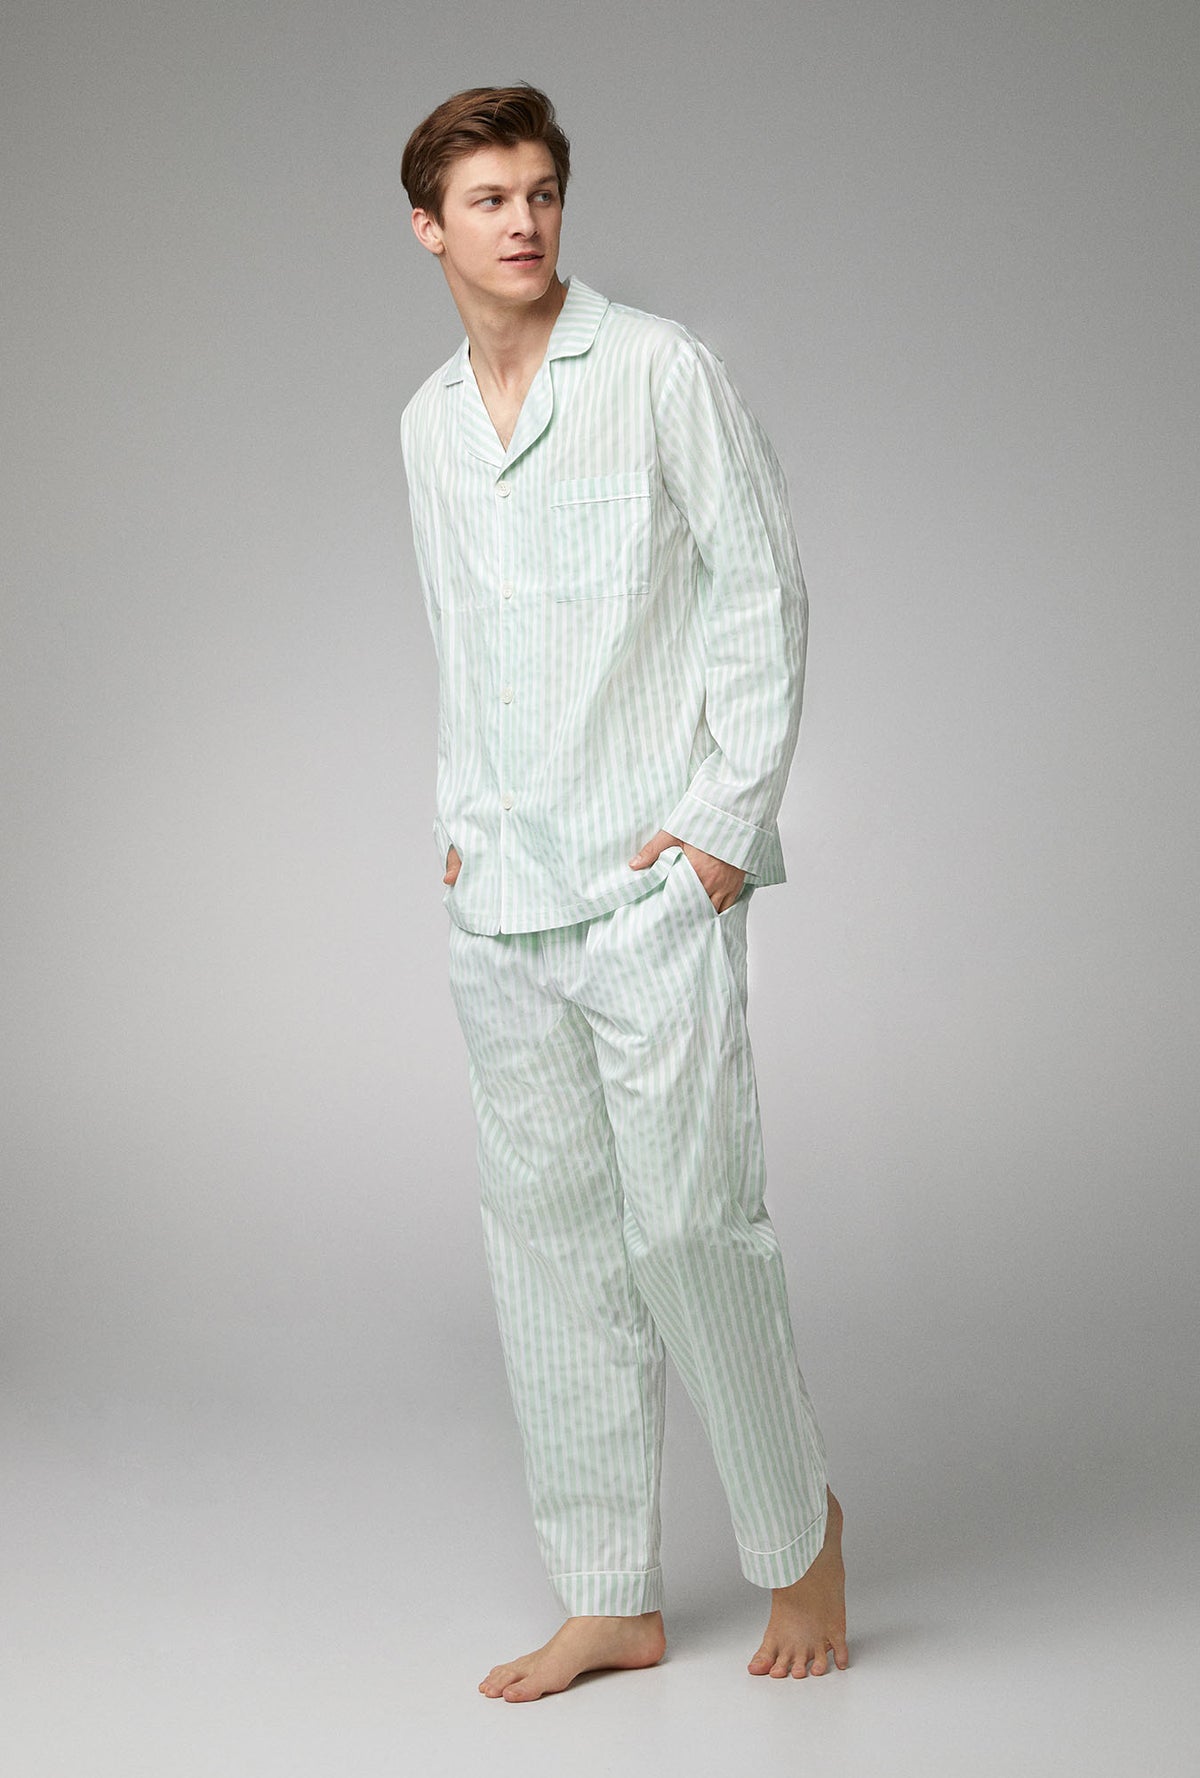 Mint 3D Stripe Men's Long Sleeve Classic Woven Cotton Poplin PJ